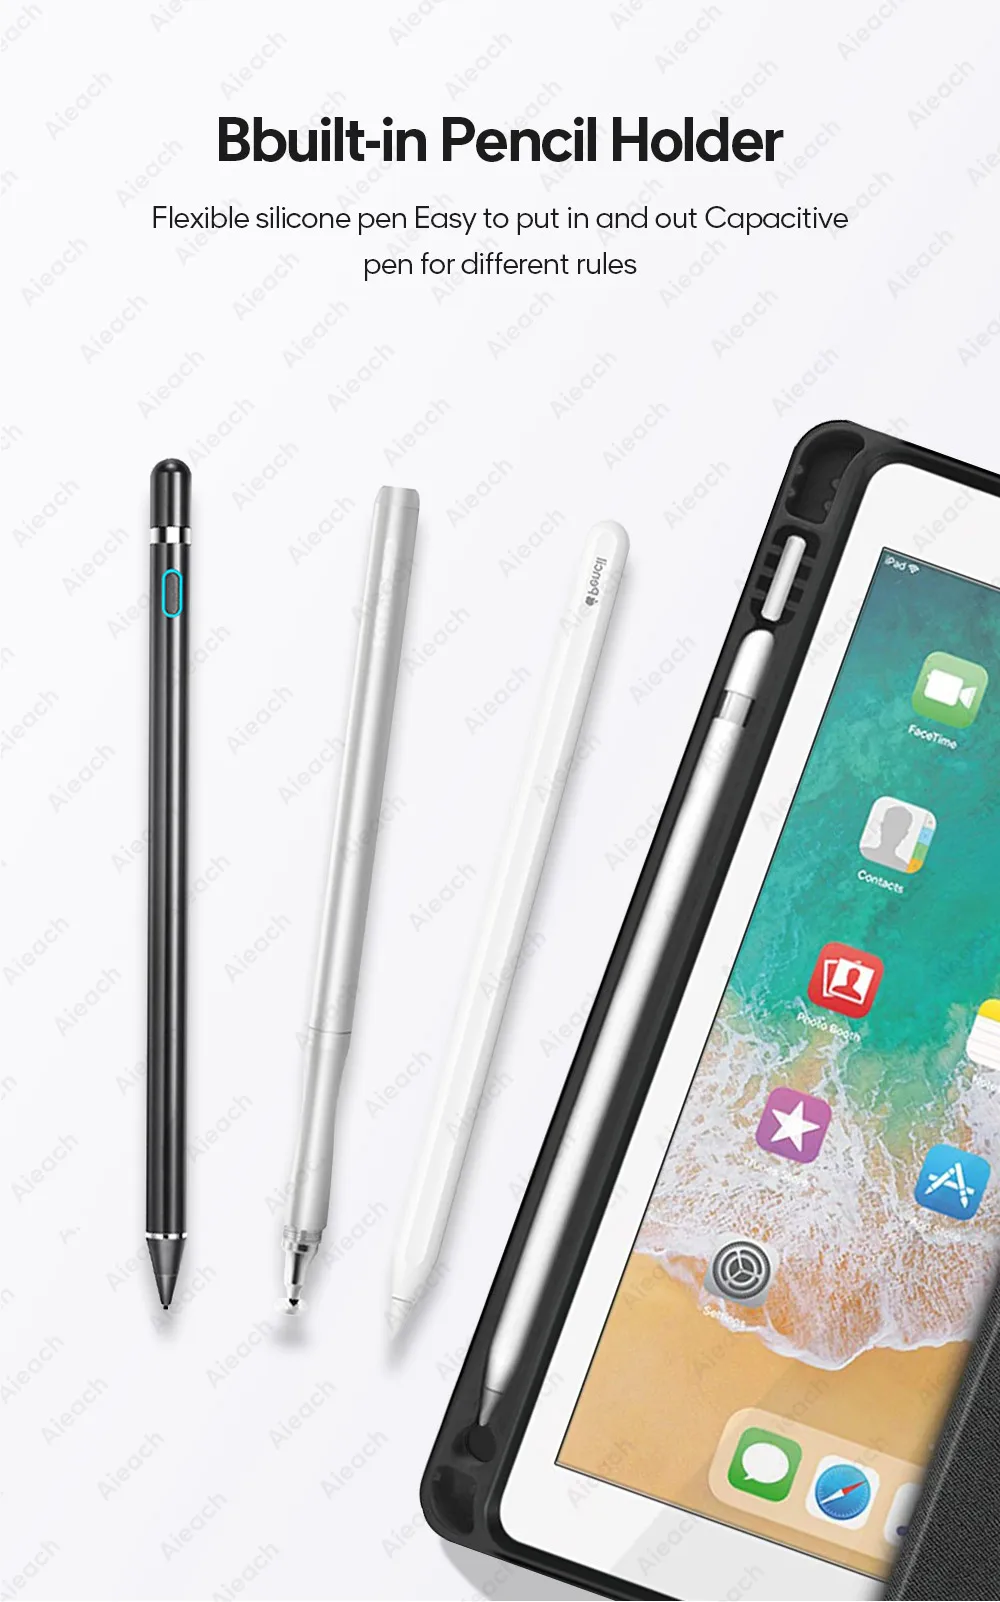 Чехол для iPad 9,7 10,2 чехол с держателем карандаша умный кожаный тканевый силиконовый чехол для iPad Pro 9,7 Air 1 2